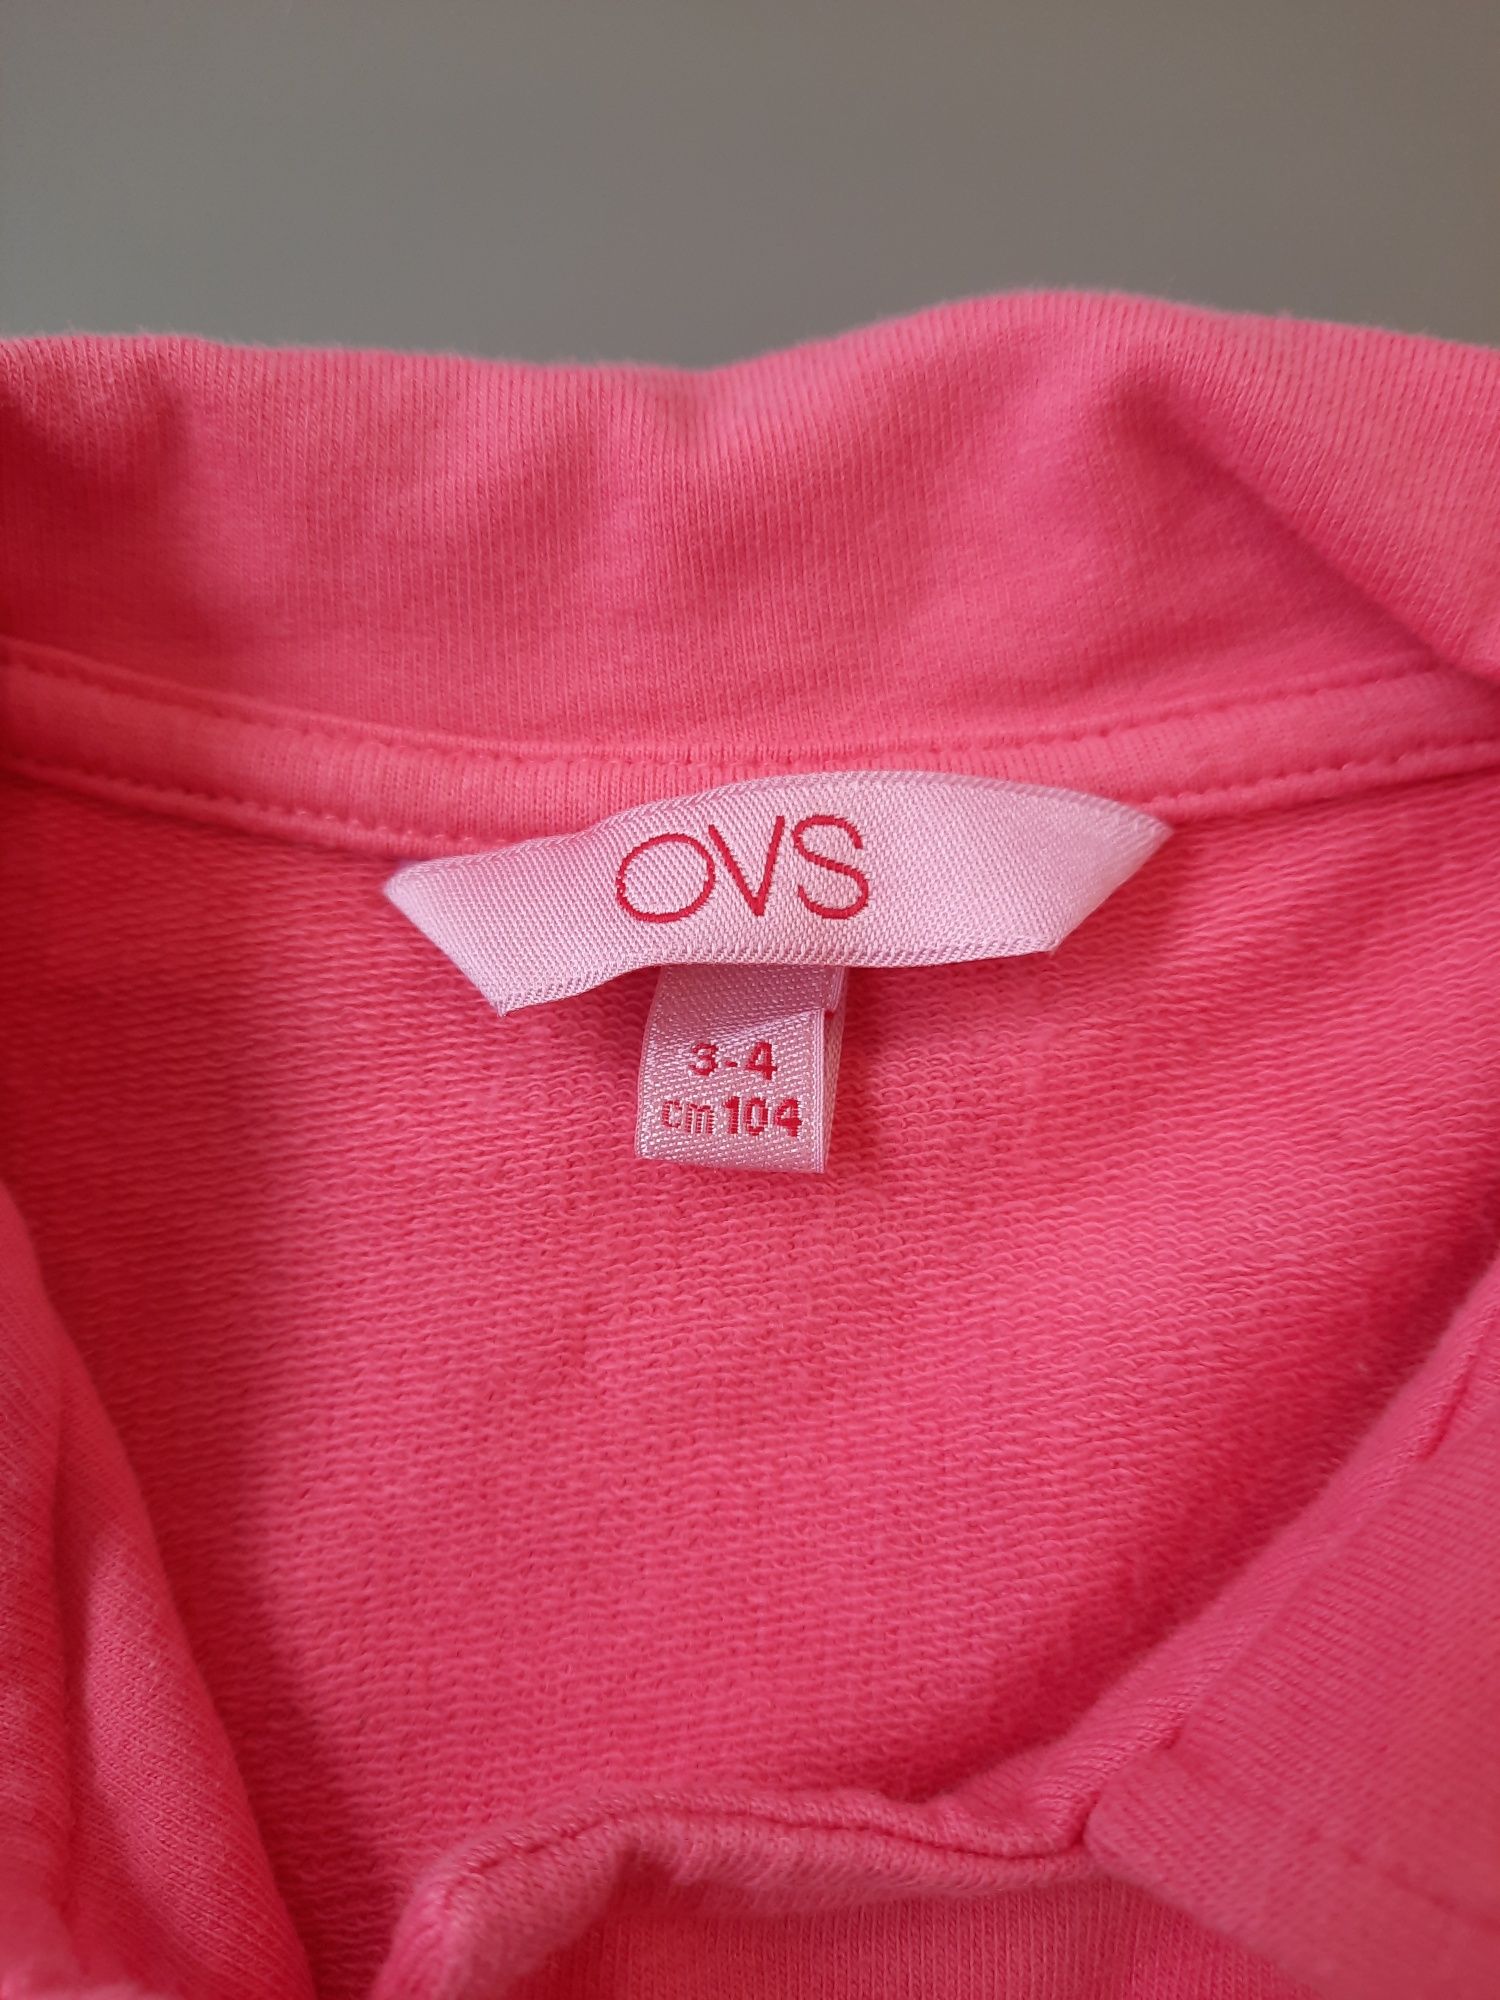 Sacou roz OVS - 104